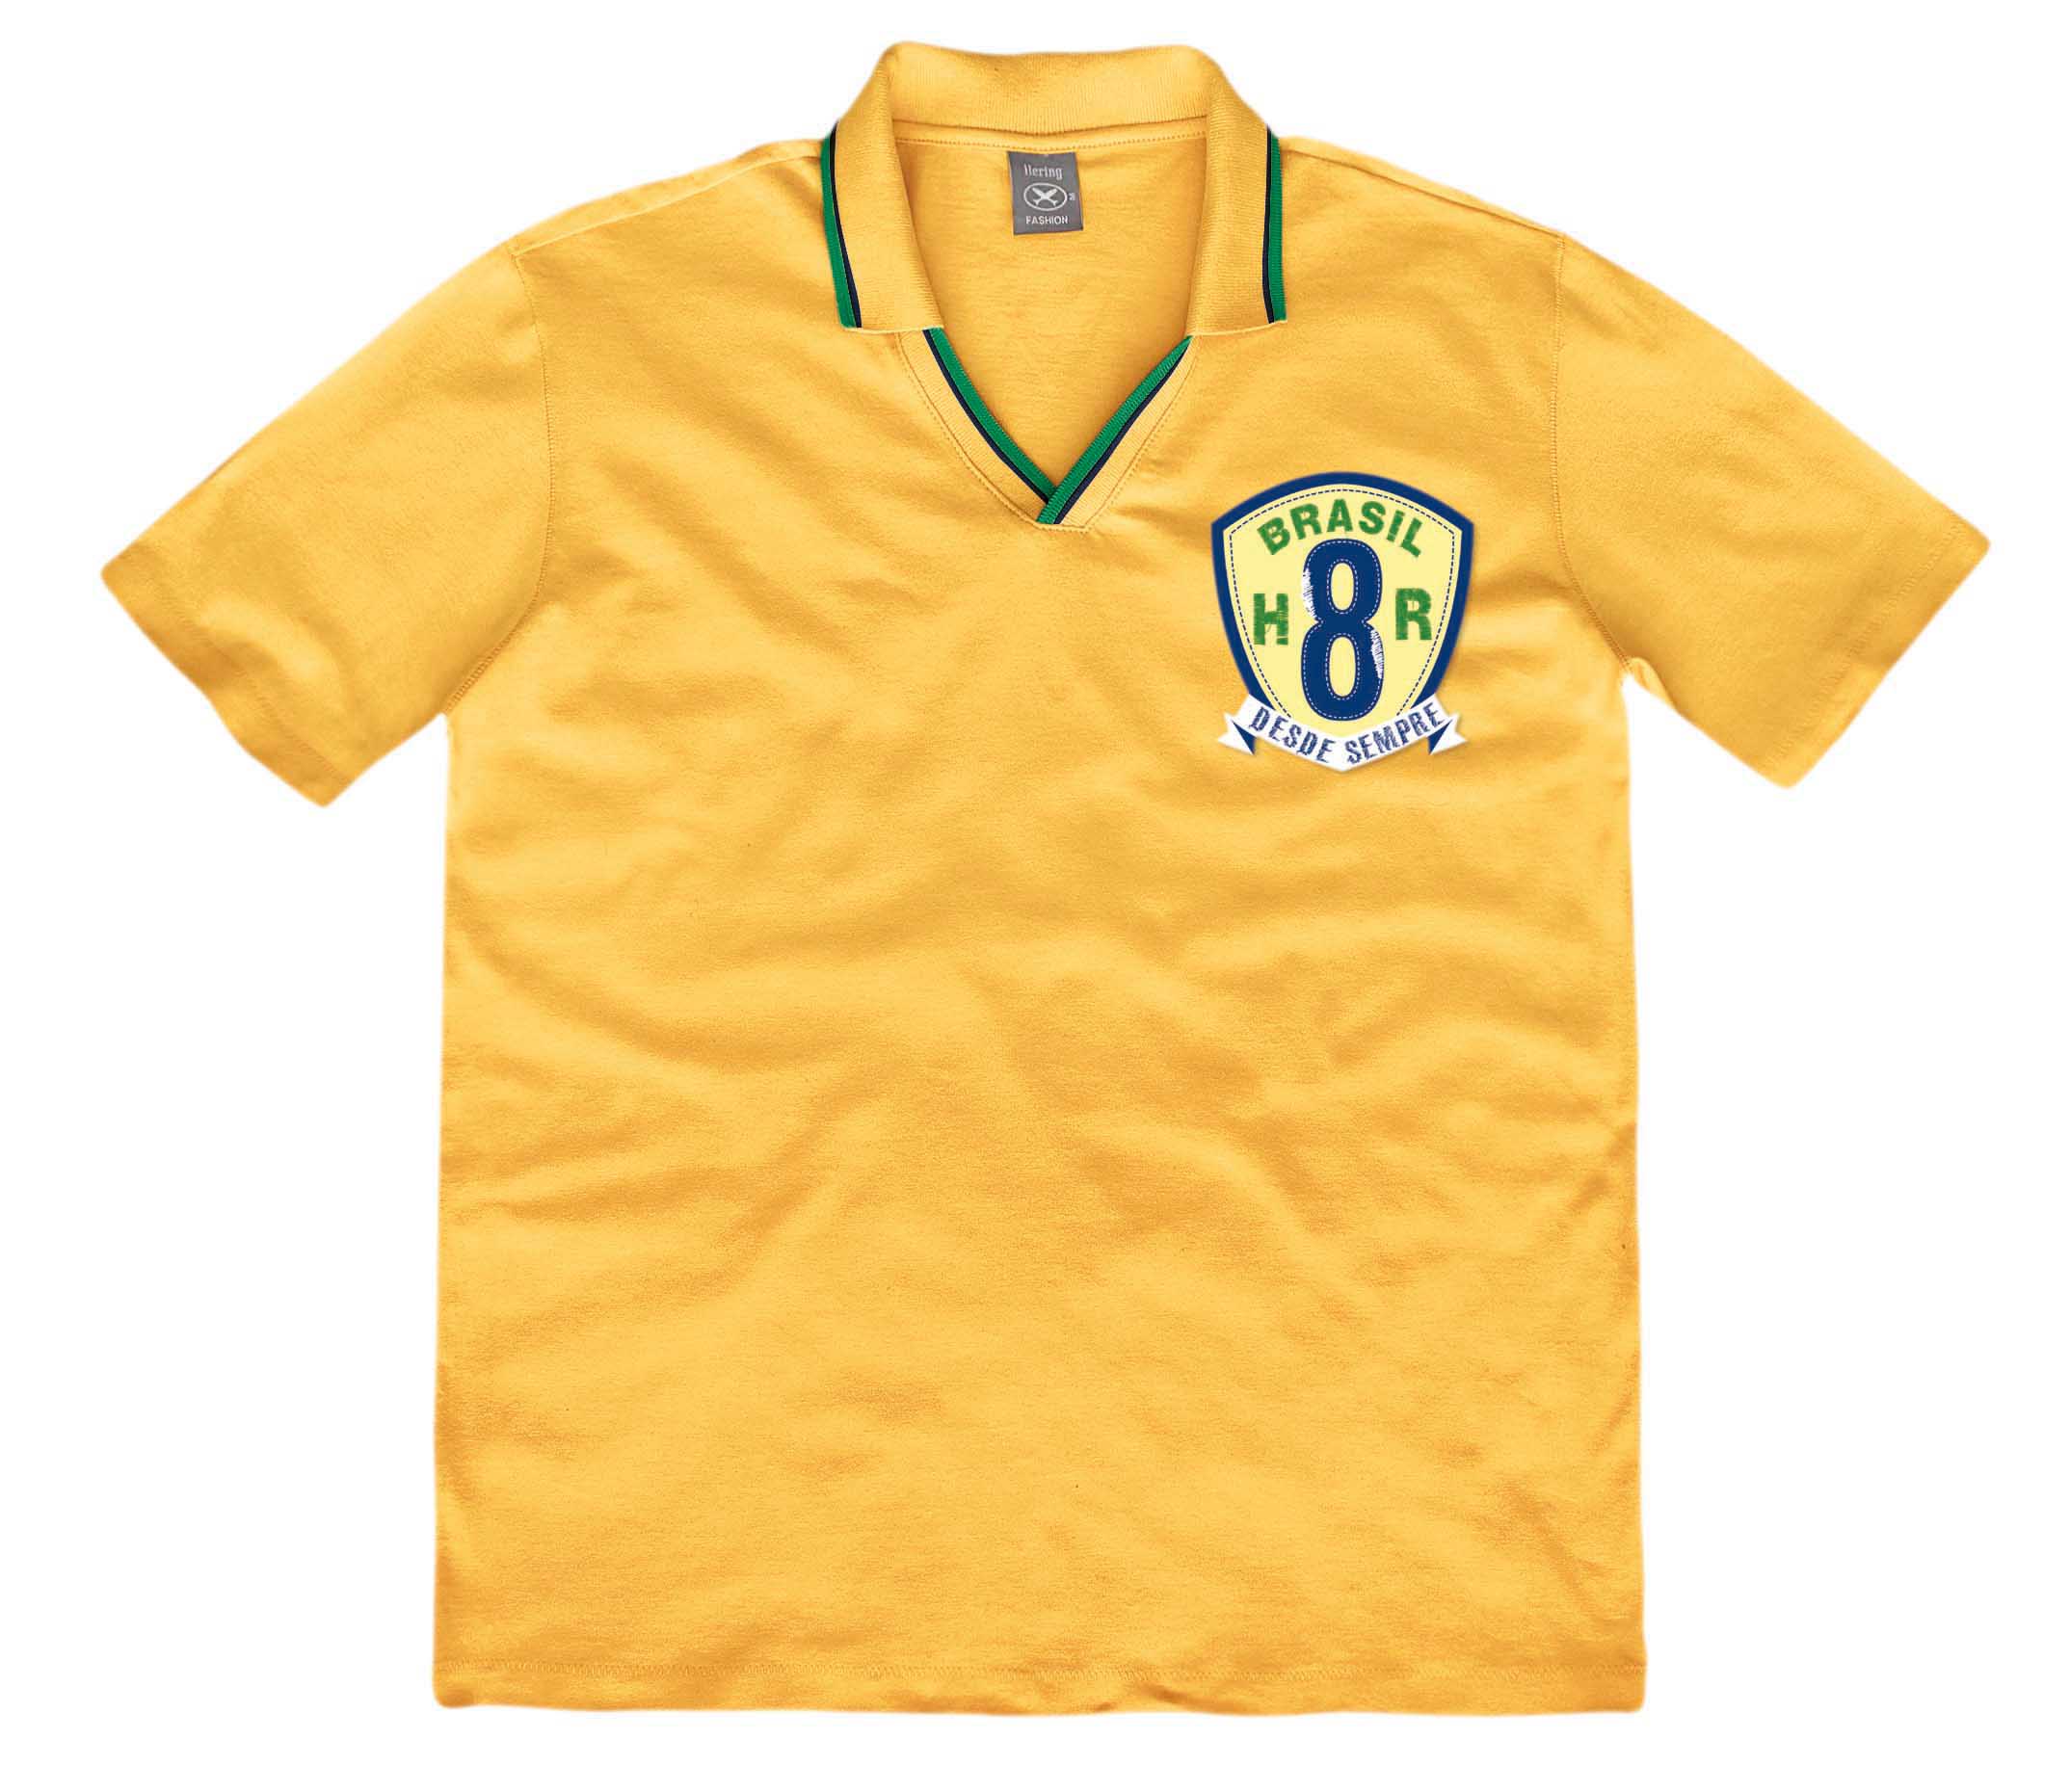 Camiseta amarela com detalhes verde e azul na gola.